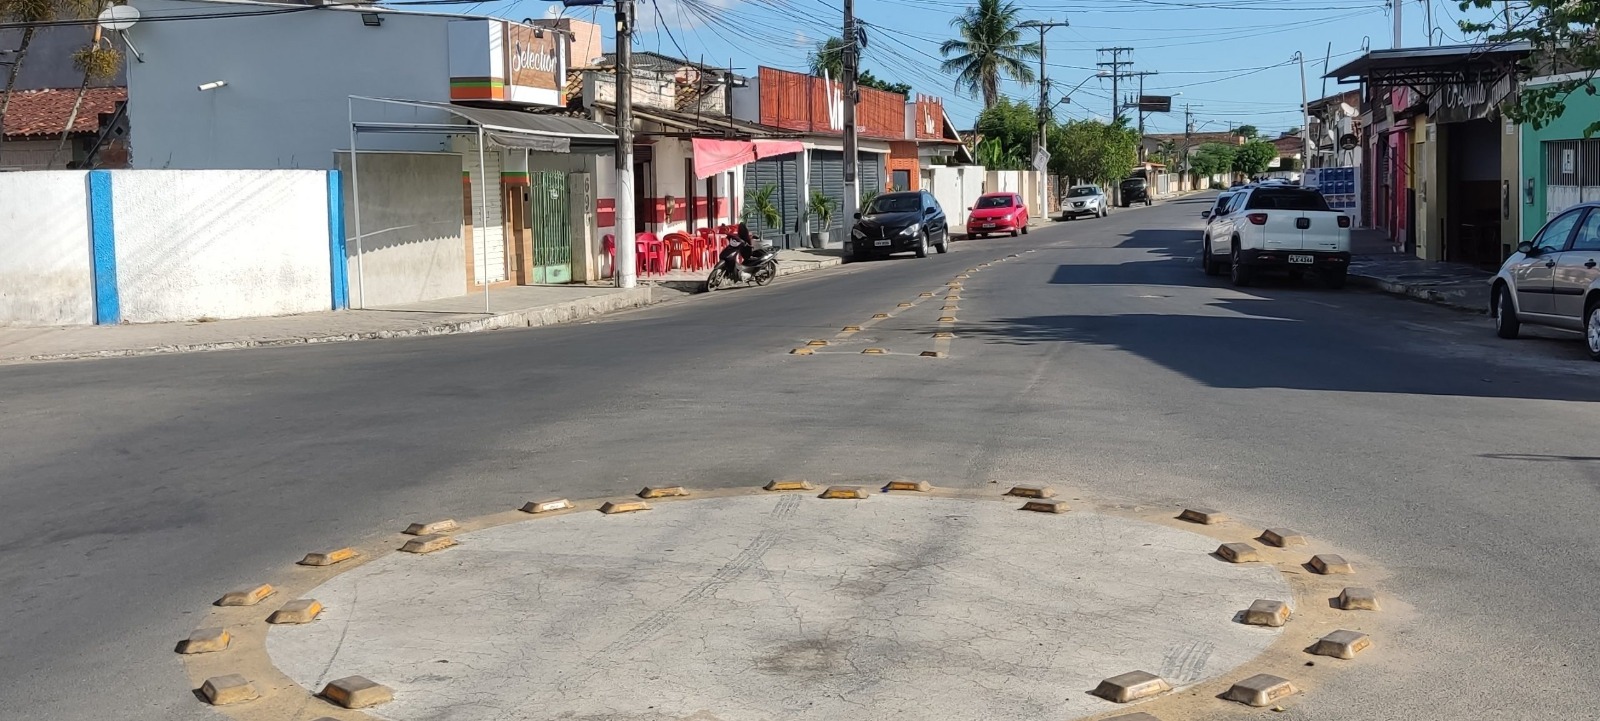 Rua da Estação ganhará decoração junina e será um novo circuito alternativo durante o São João de Cruz